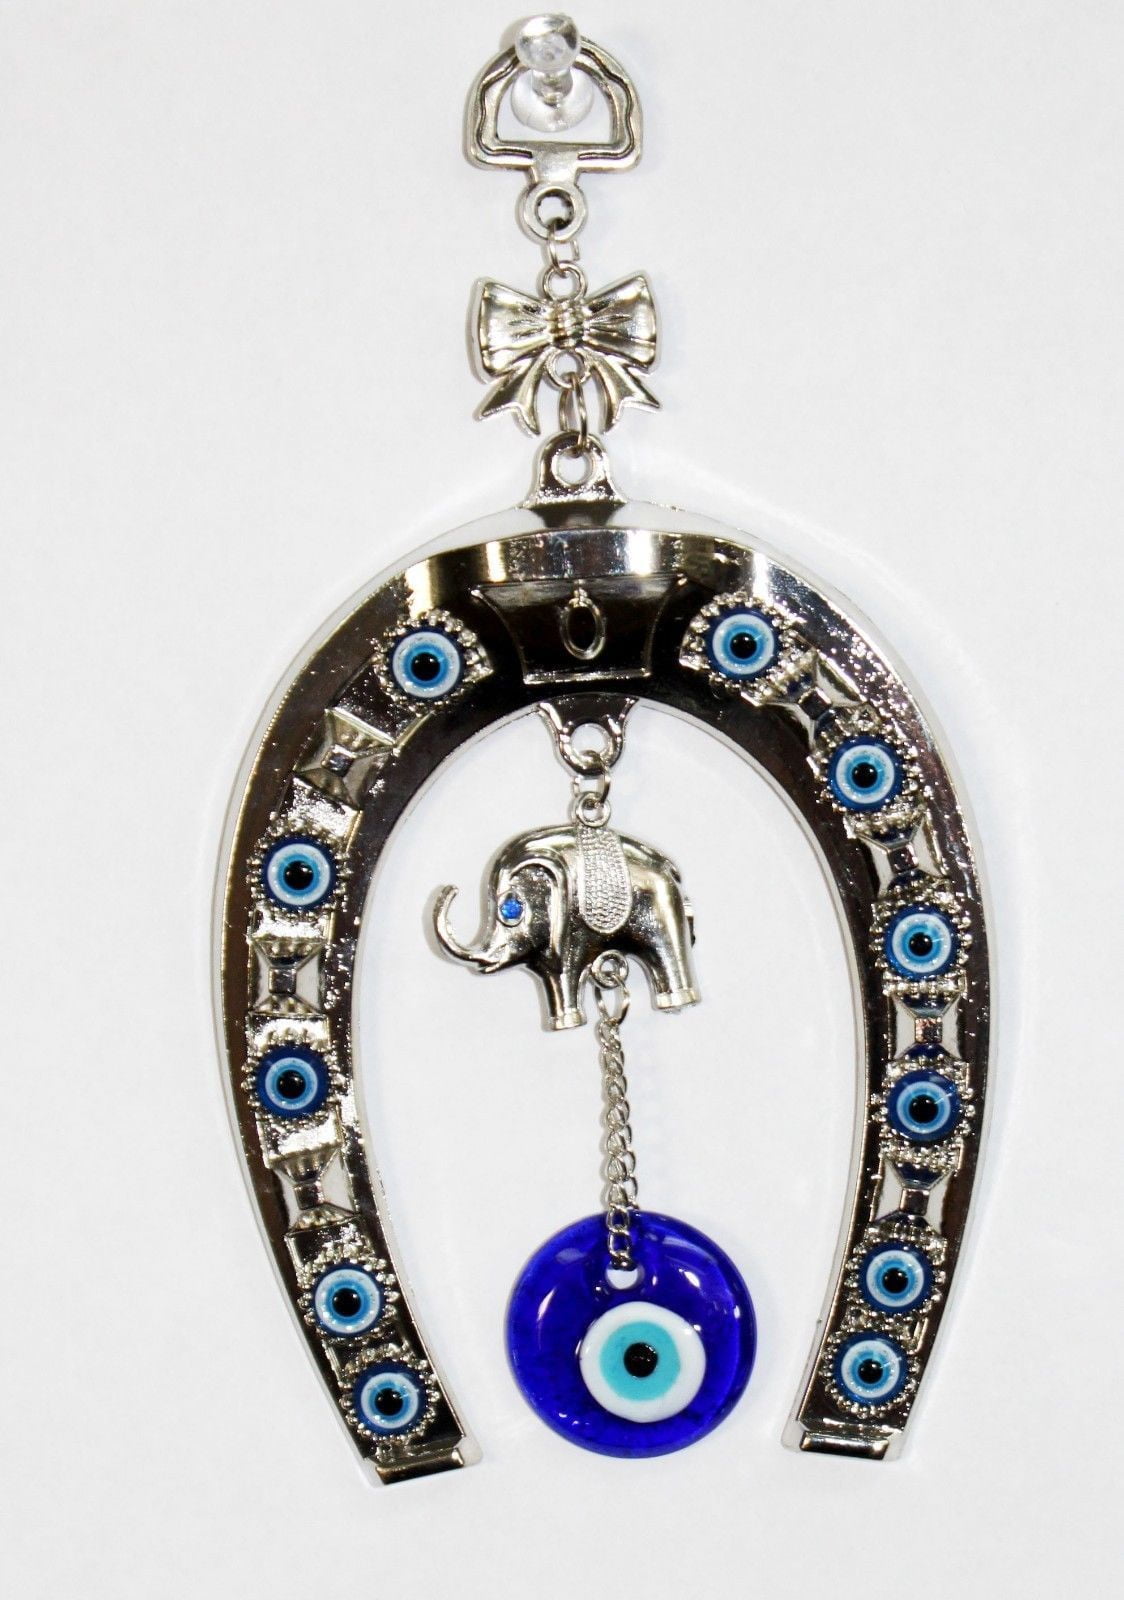 Car Pendant Horseshoe with Elephant Hanging Ornament Evil Eye Navy Blue 